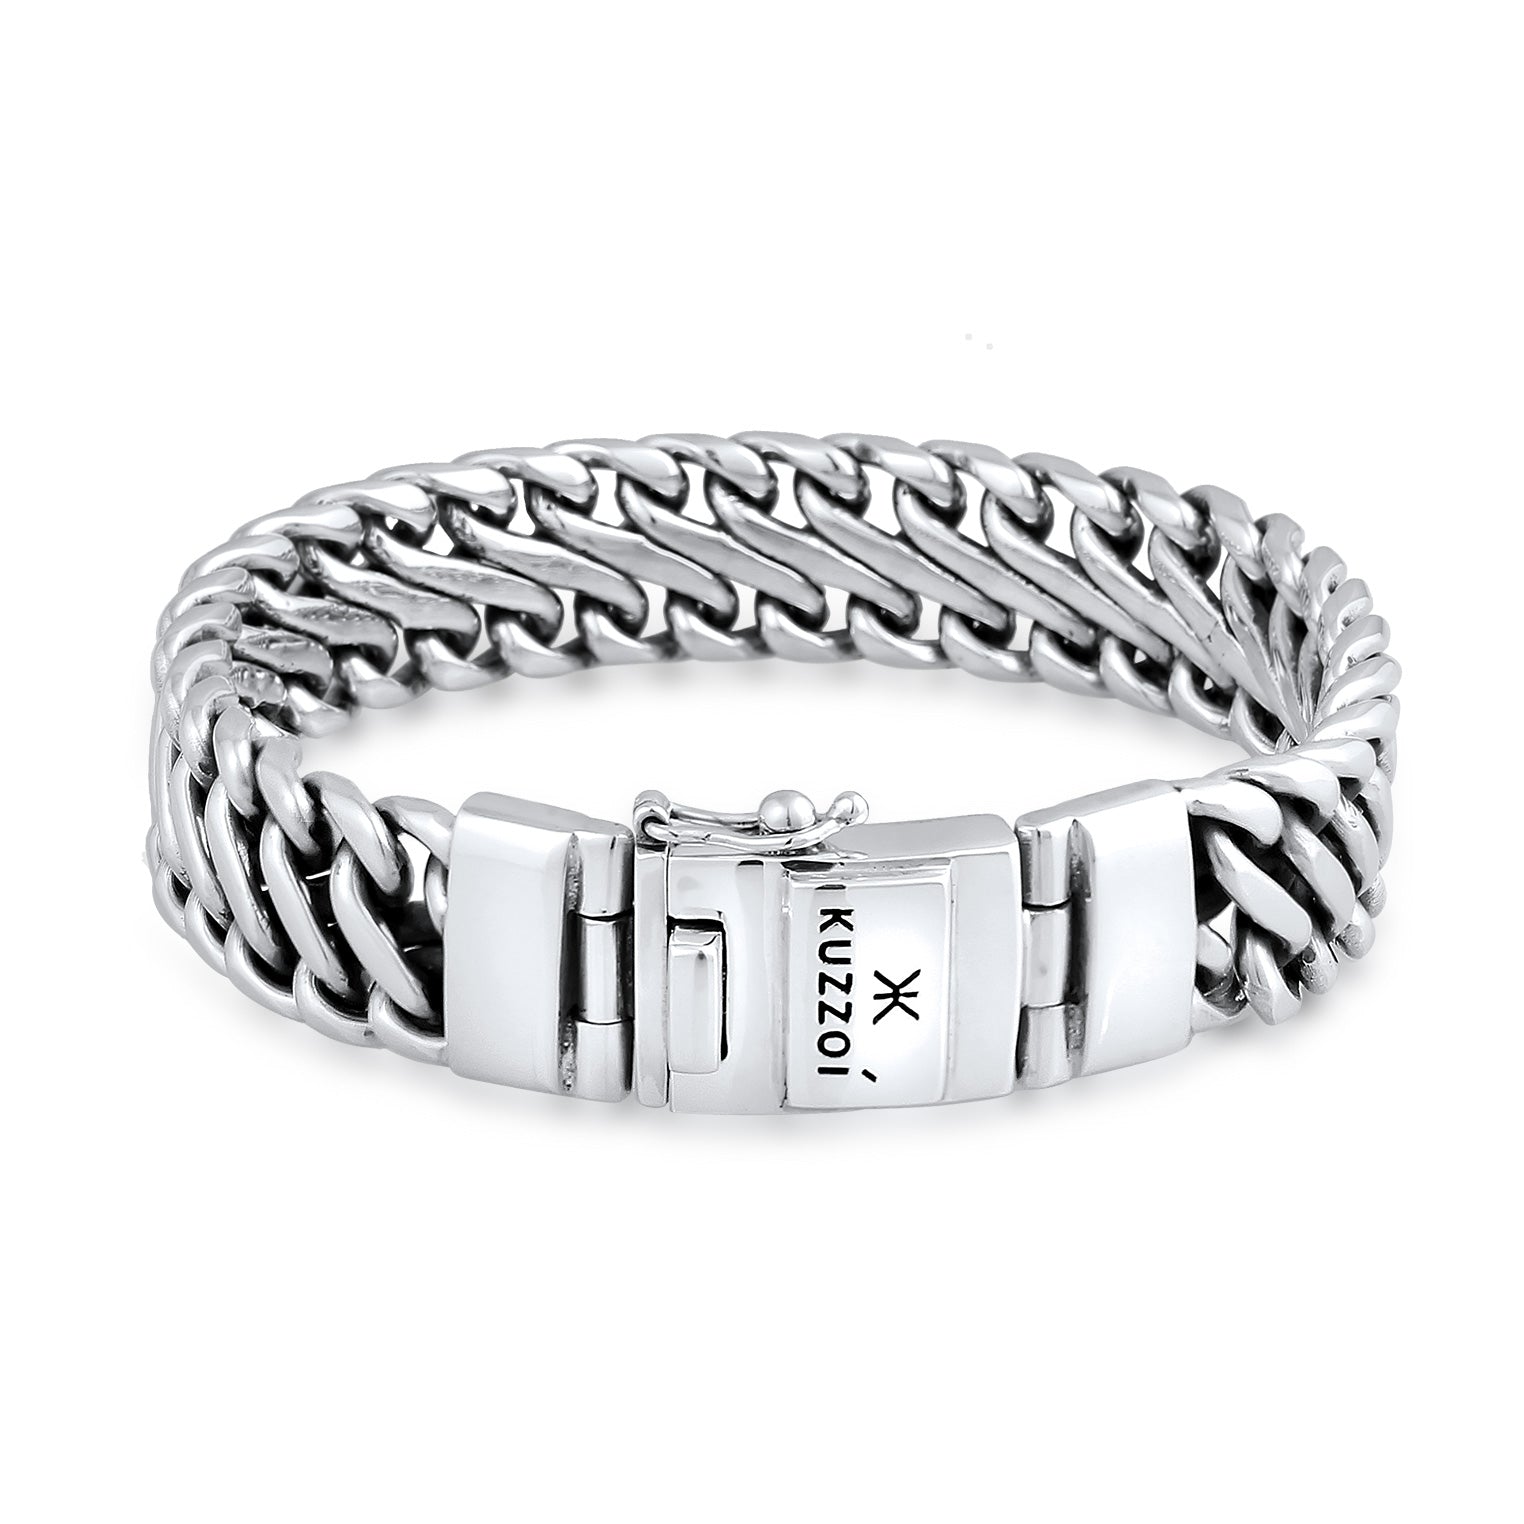 Silber - KUZZOI | Königs-Armband Trend | 925er Sterling Silber